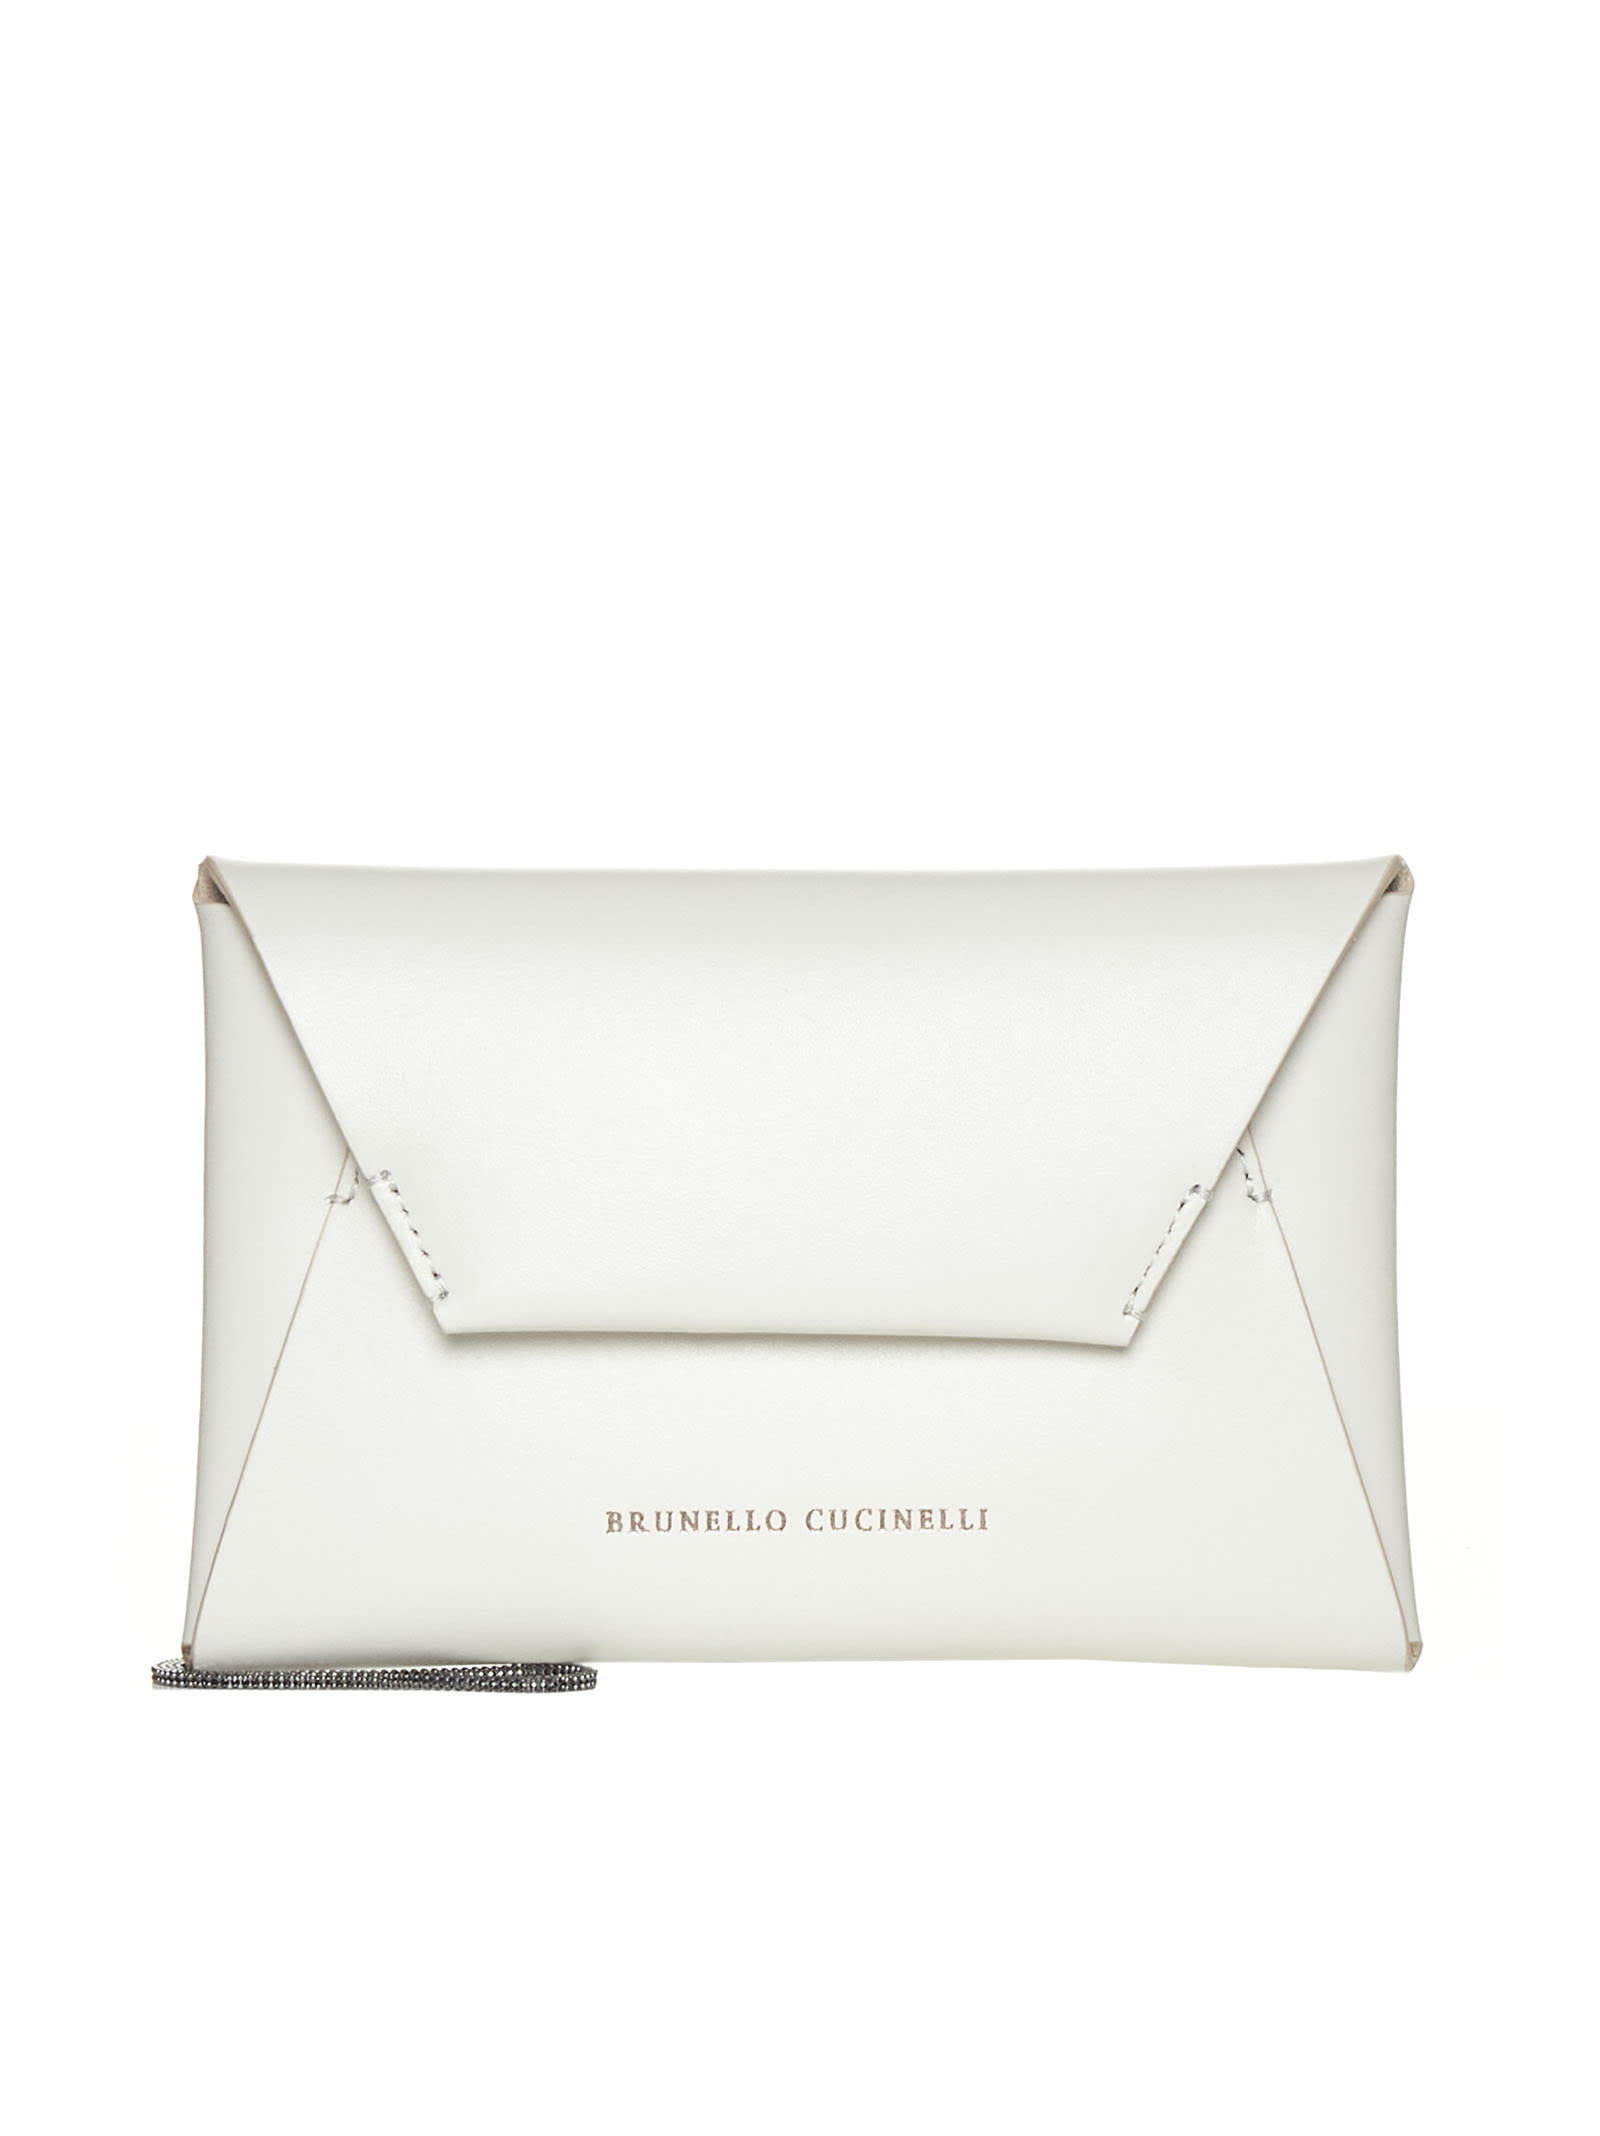 Brunello Cucinelli Shoulder Bag